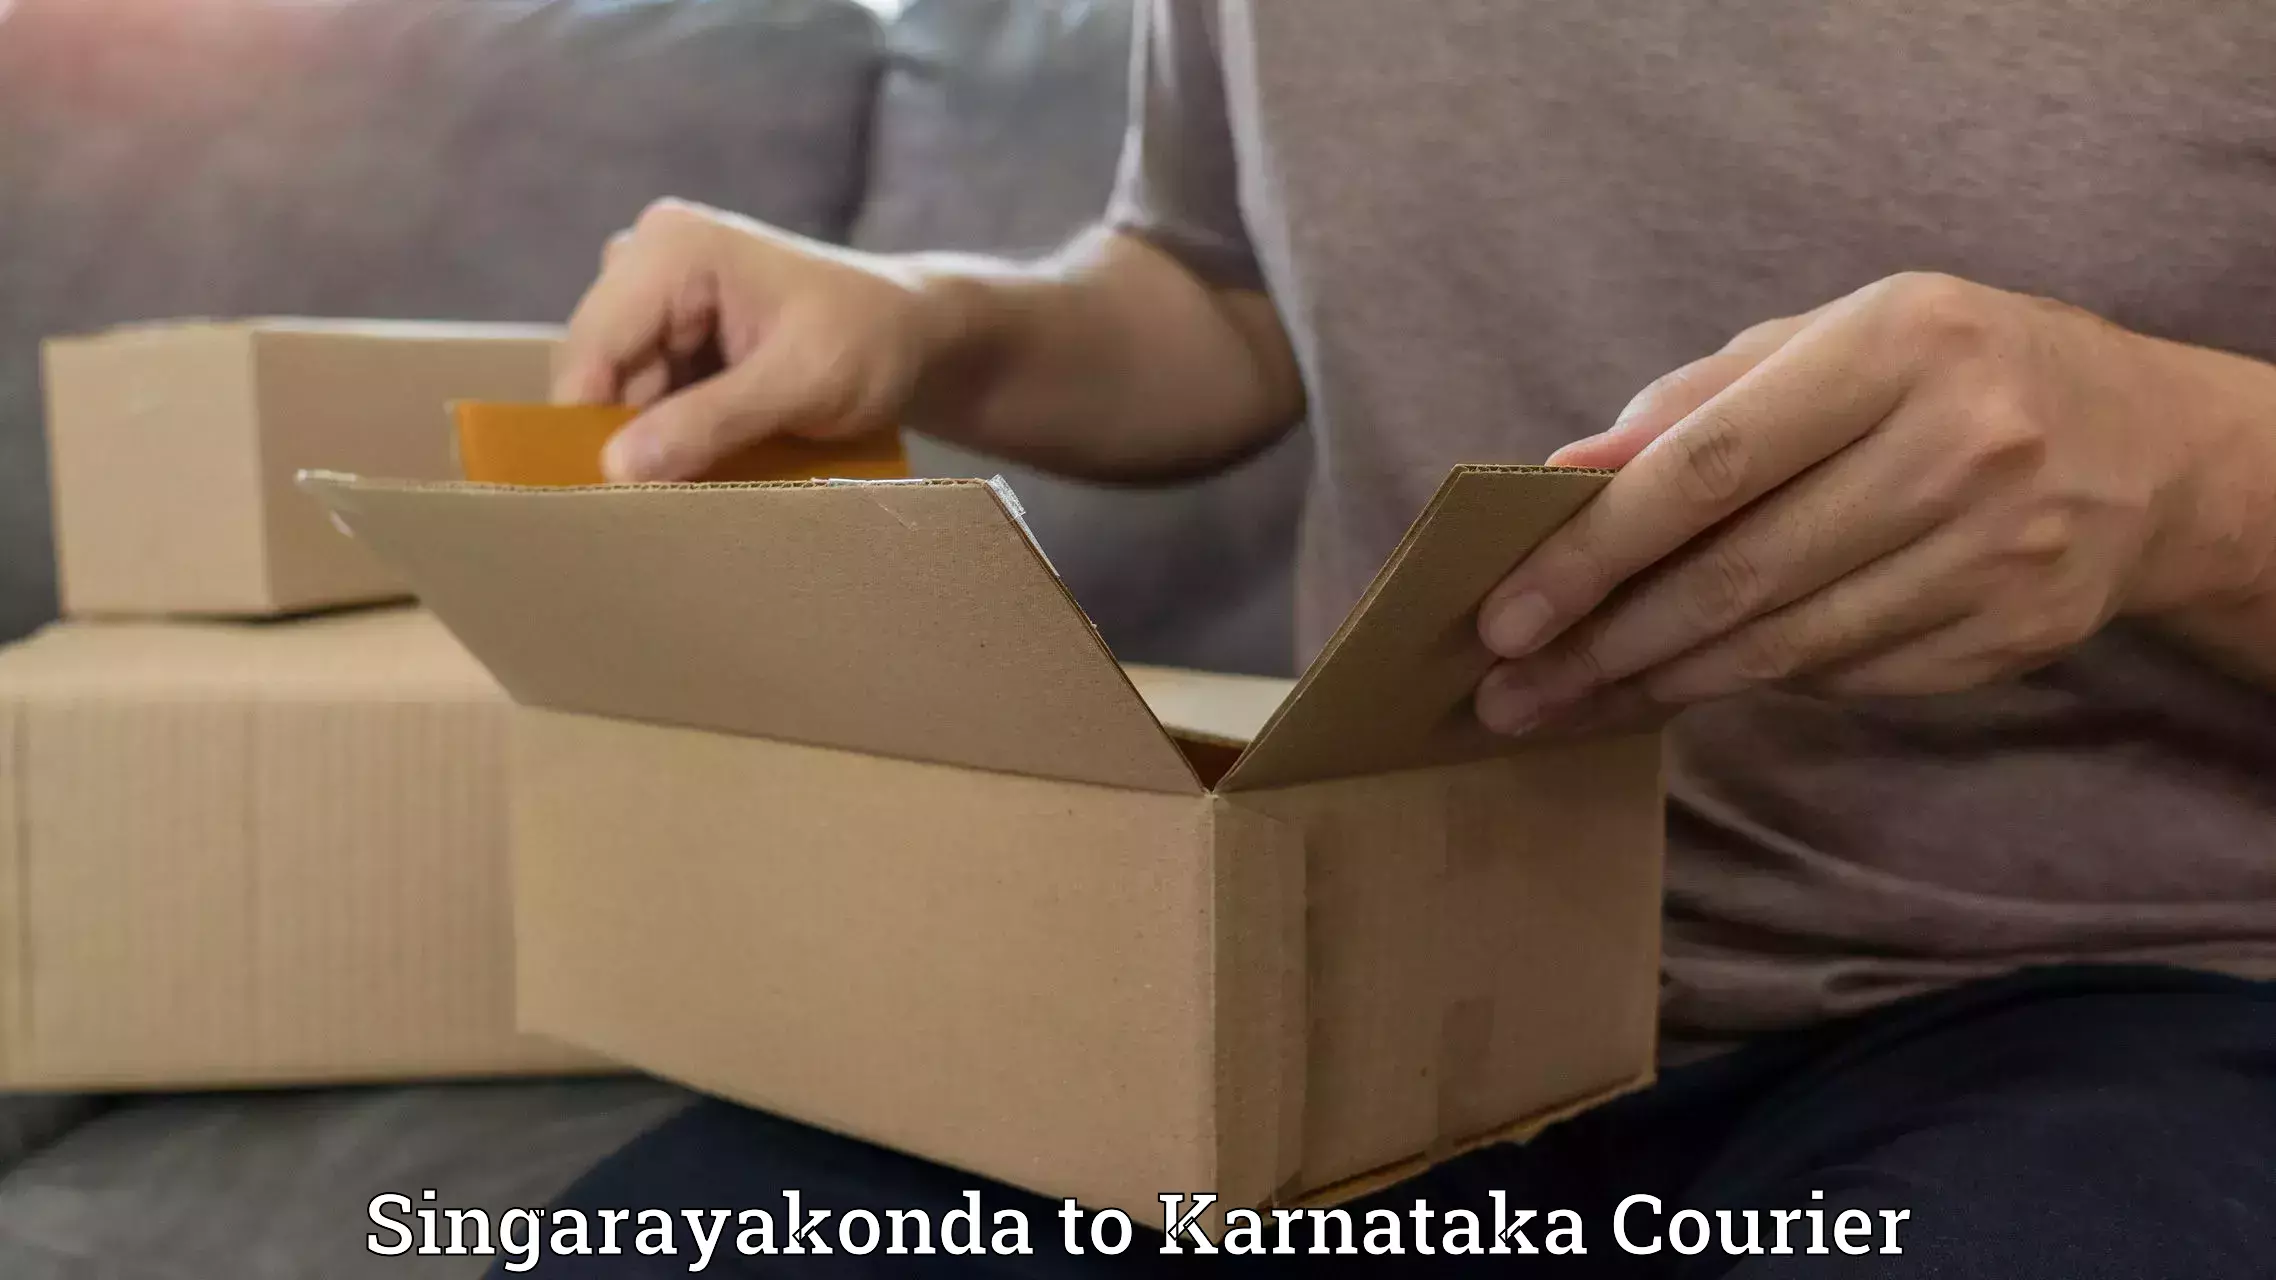 Next-generation courier services Singarayakonda to Gundlupete